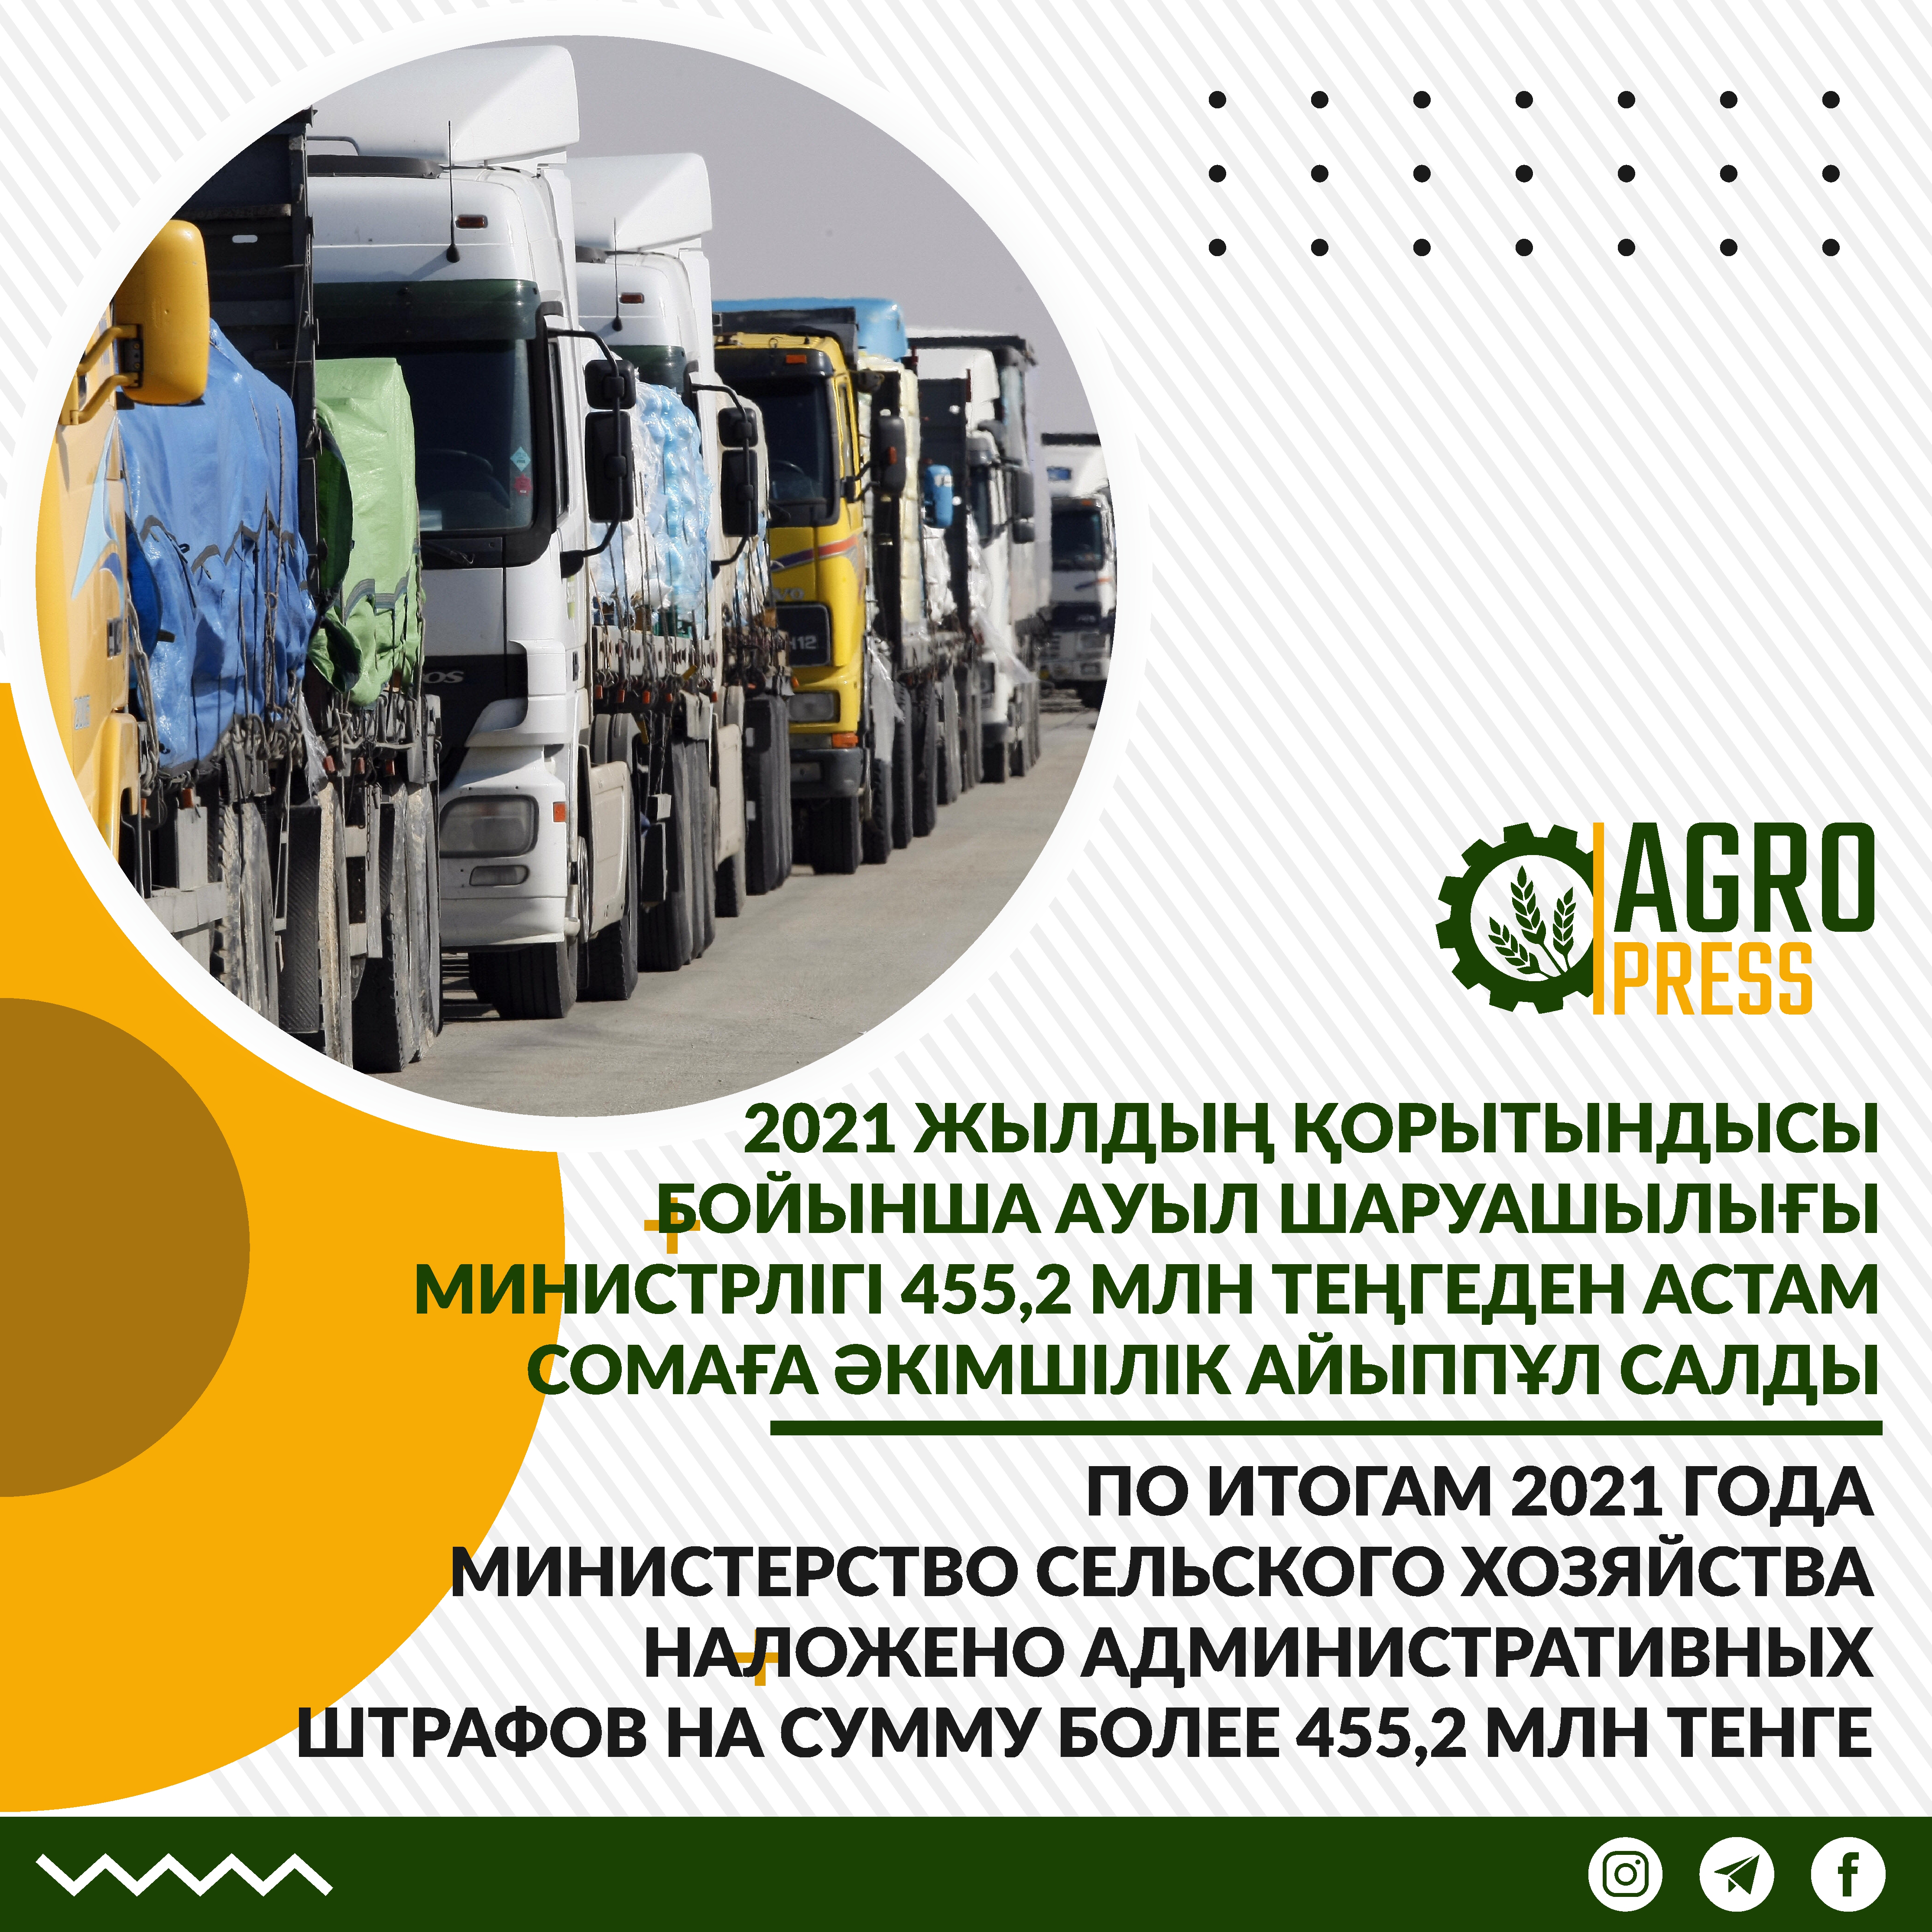 По итогам 2021 года Министерством сельского хозяйства наложено административных штрафов на сумму более 455,2 млн тенге